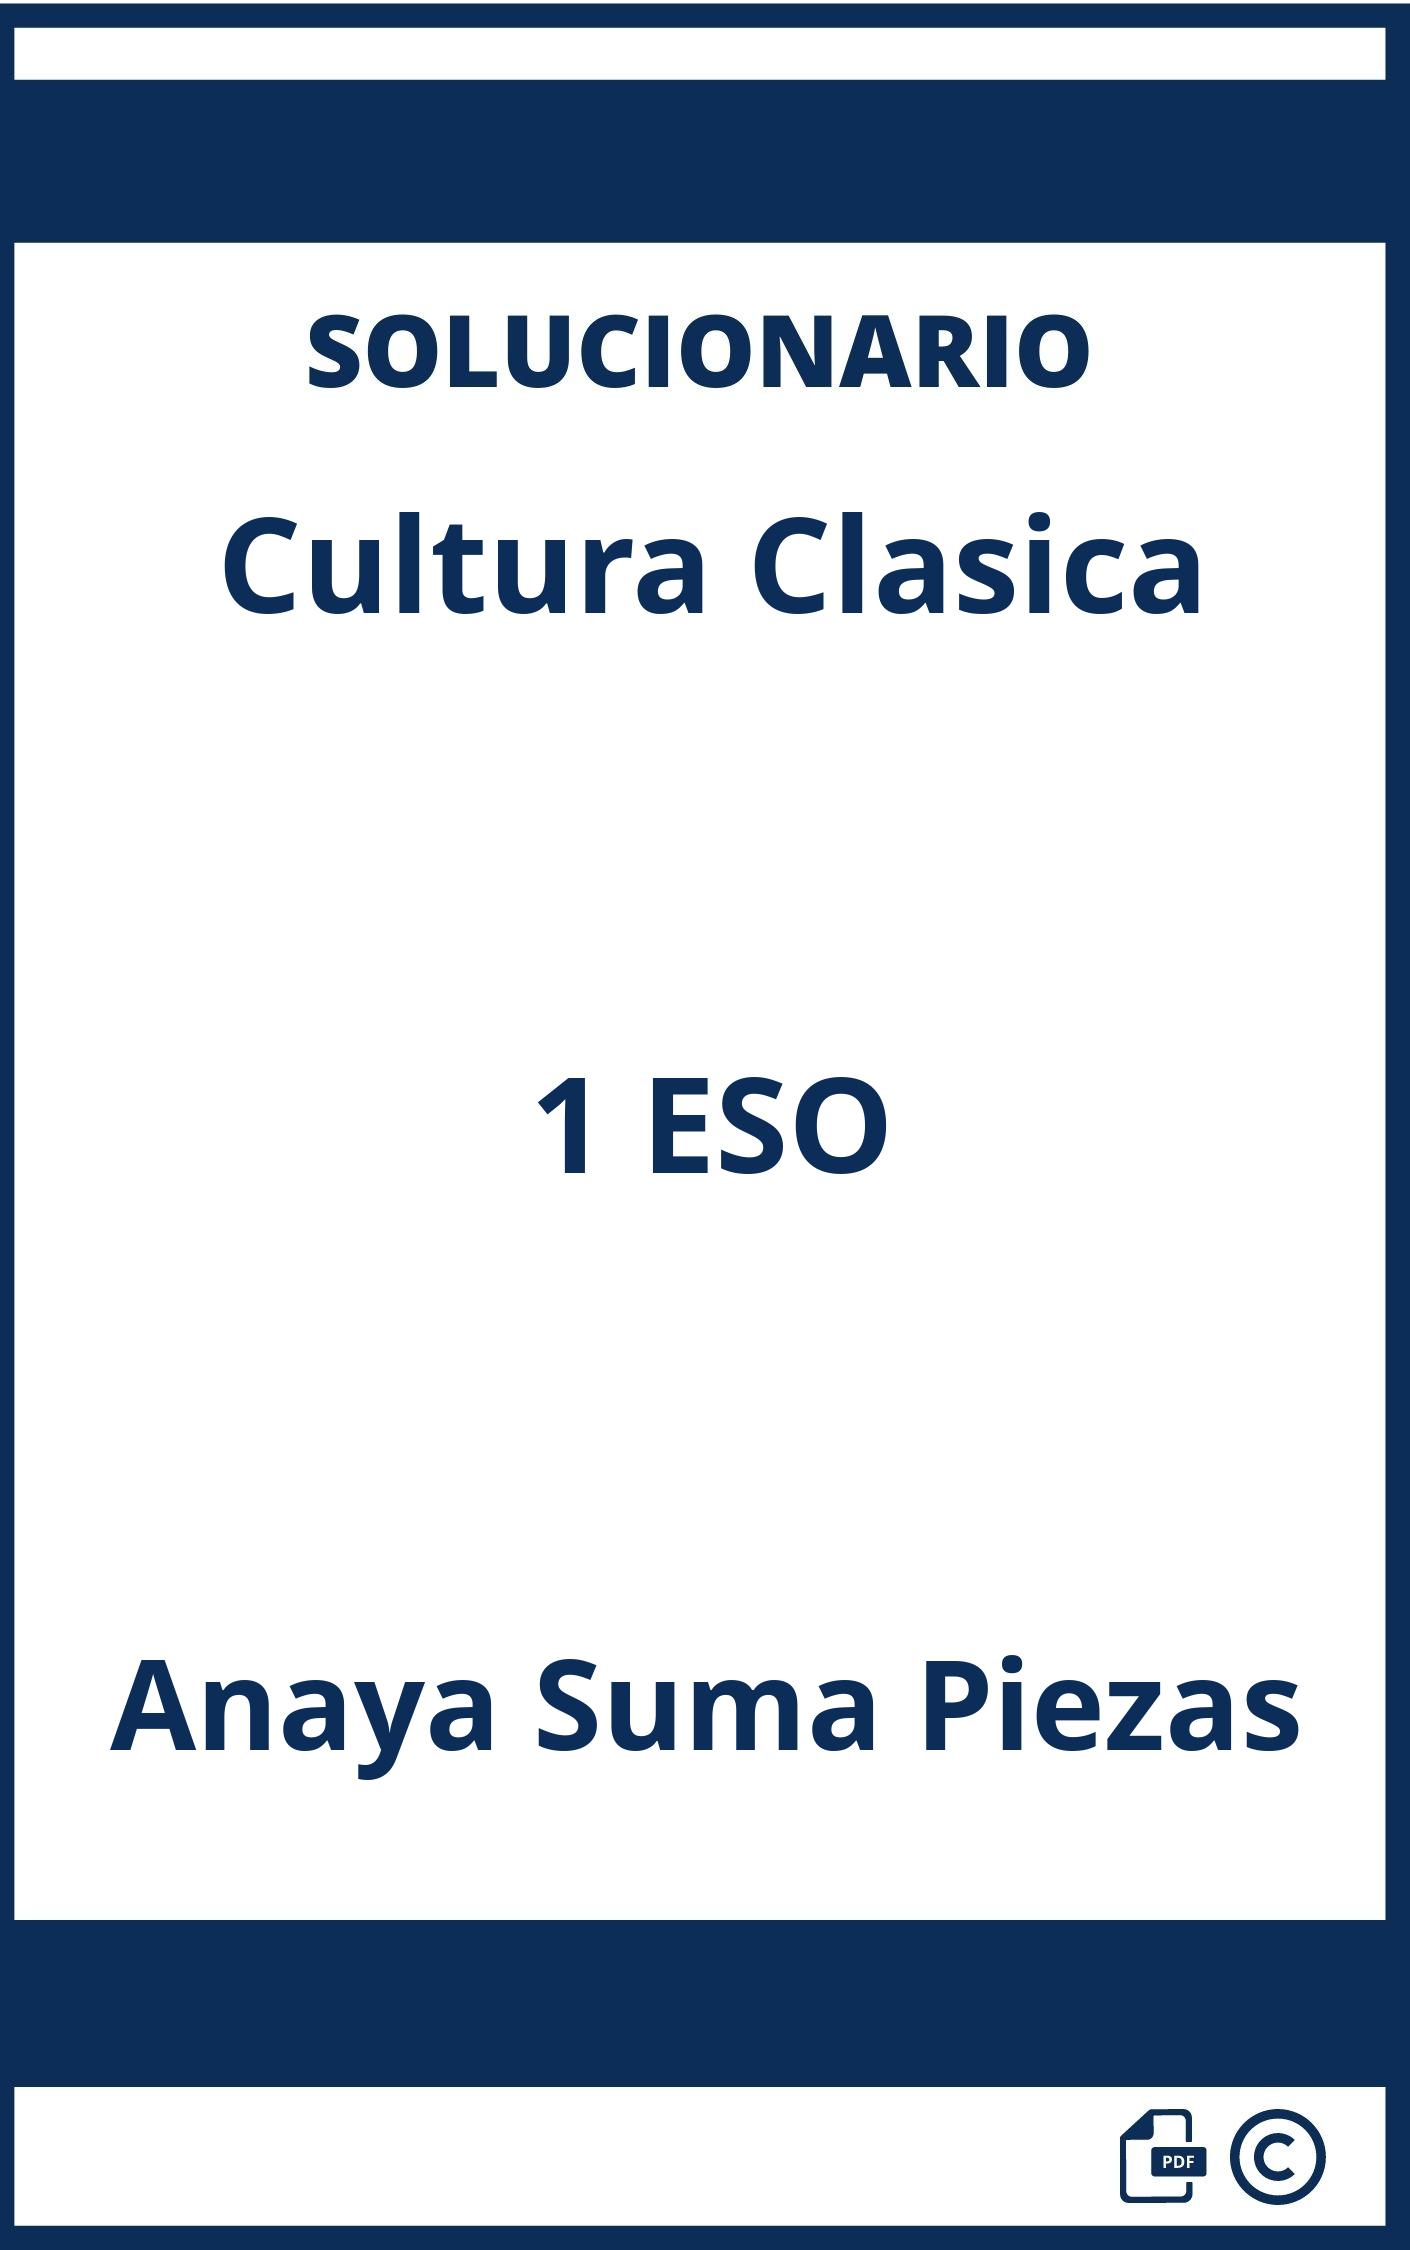 Solucionario Cultura Clasica 1 ESO Anaya Suma Piezas